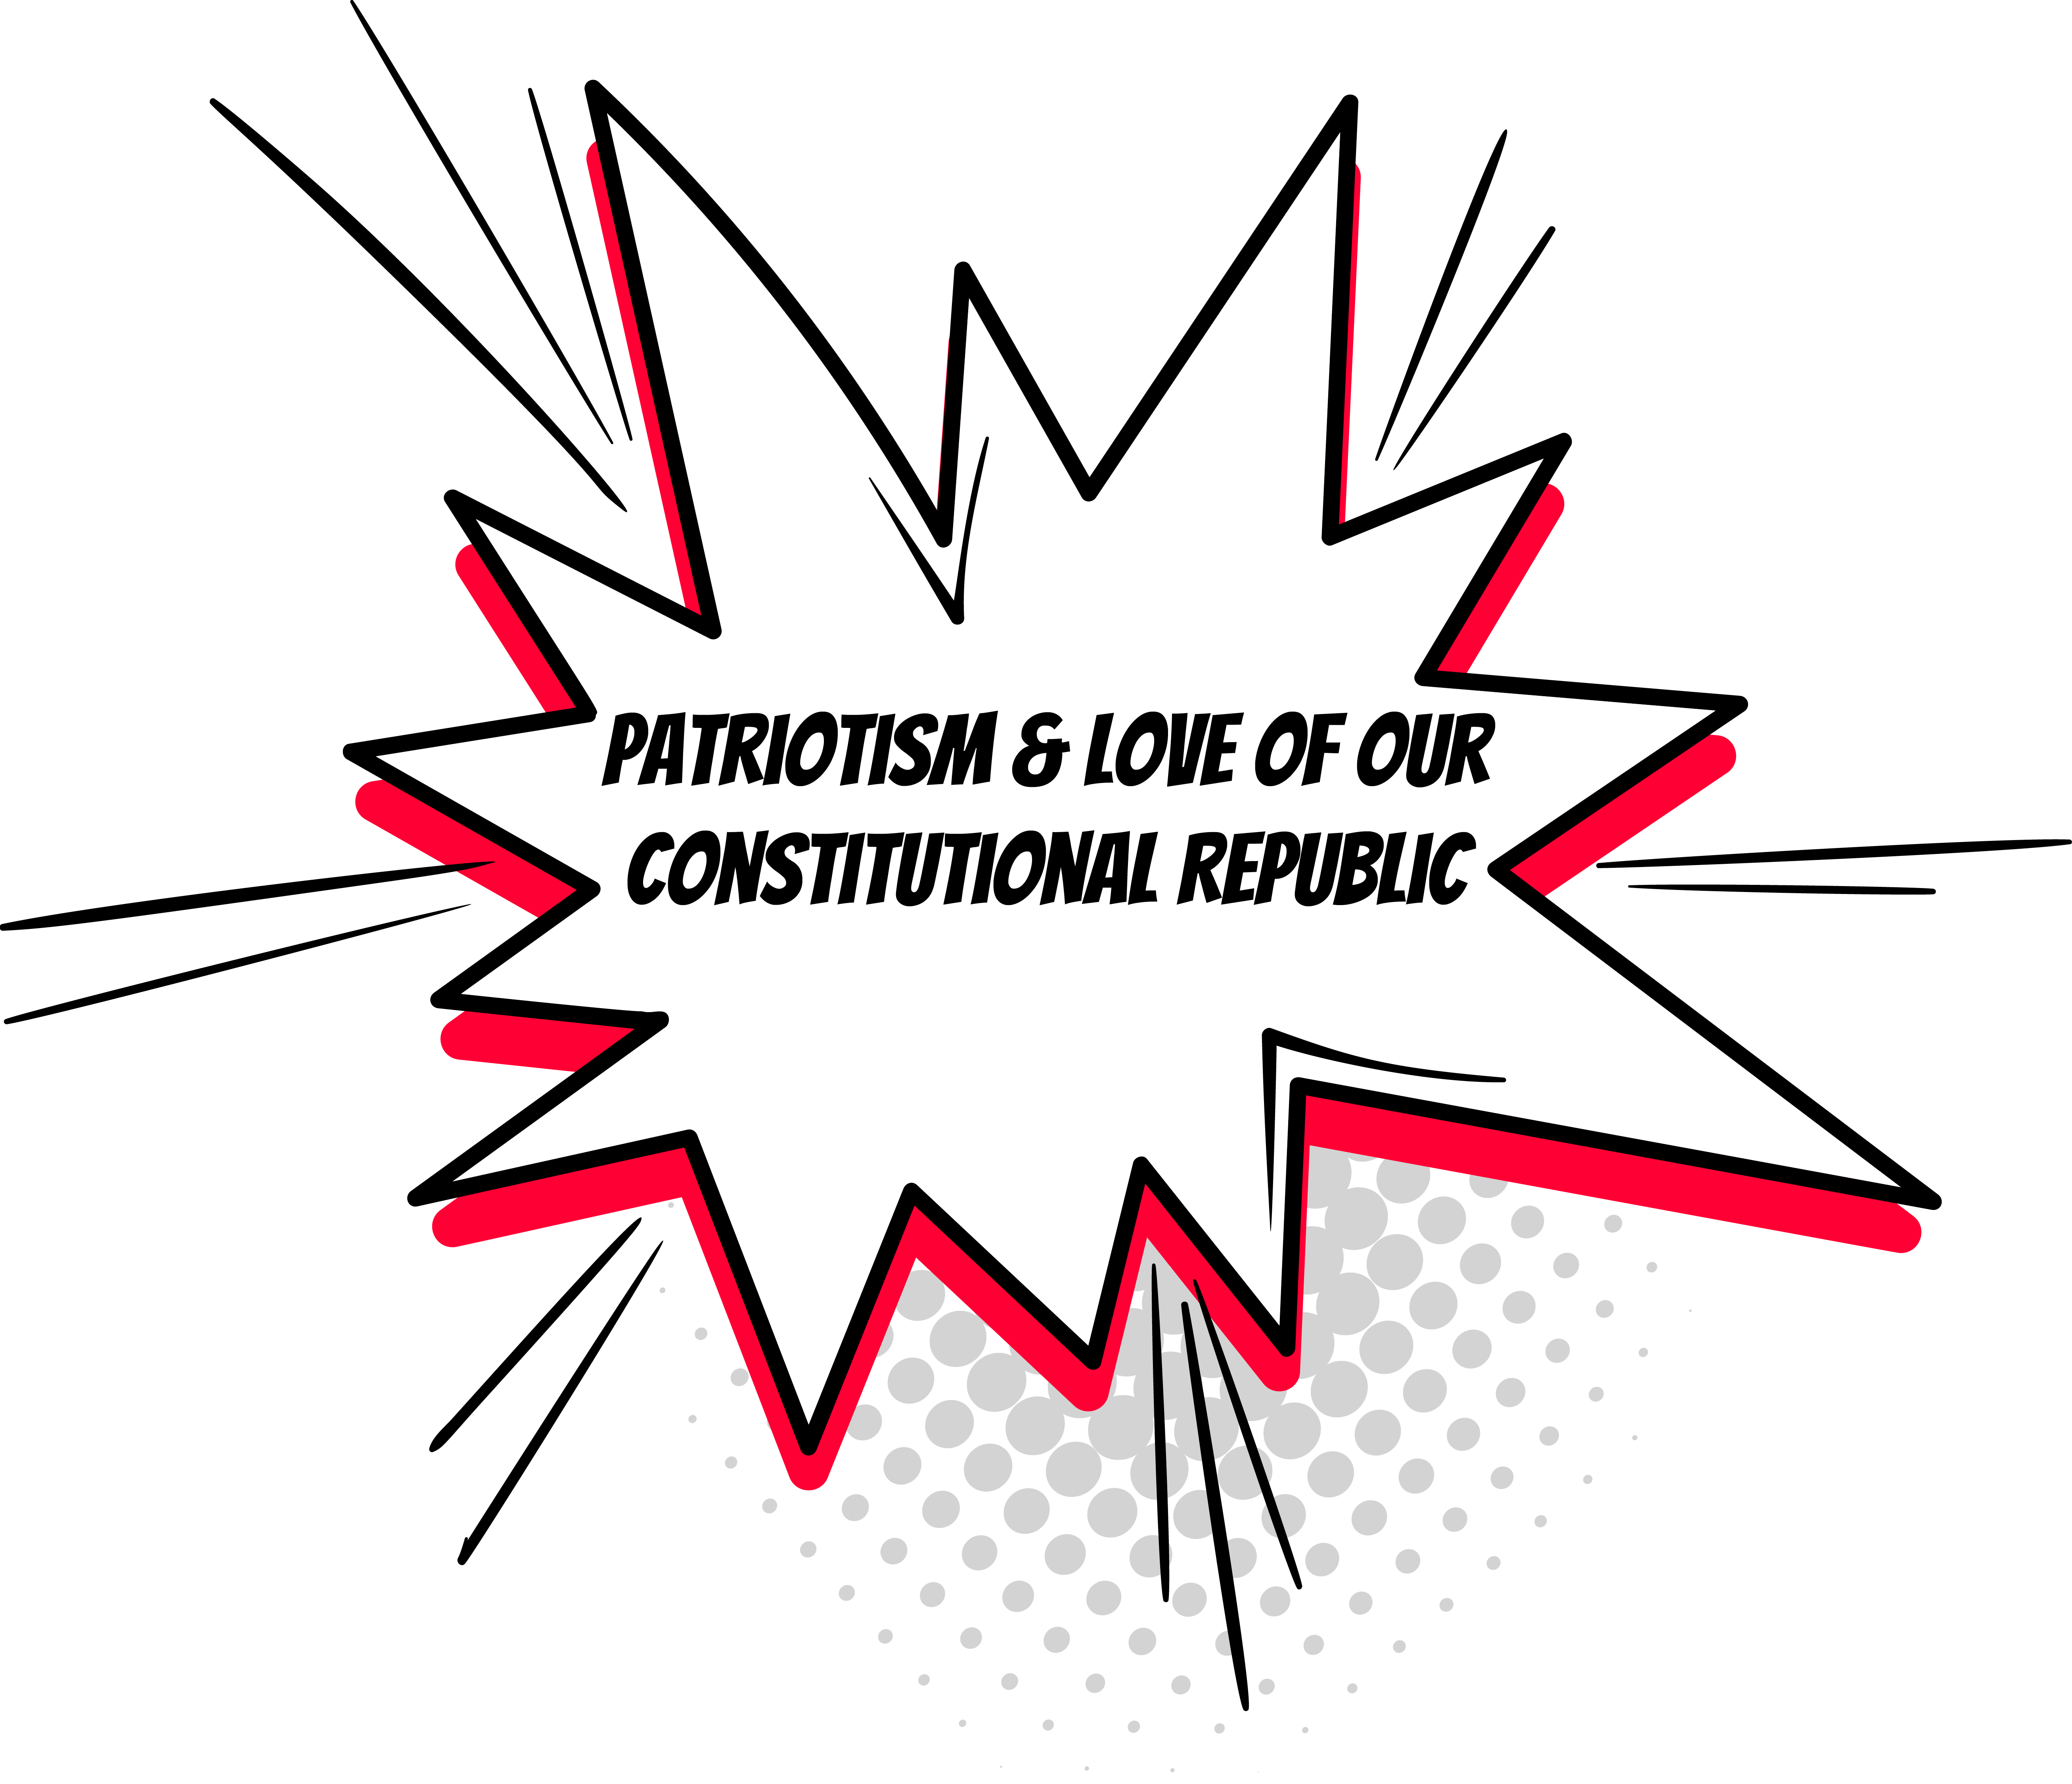 patriotism & love of our constitutional republic